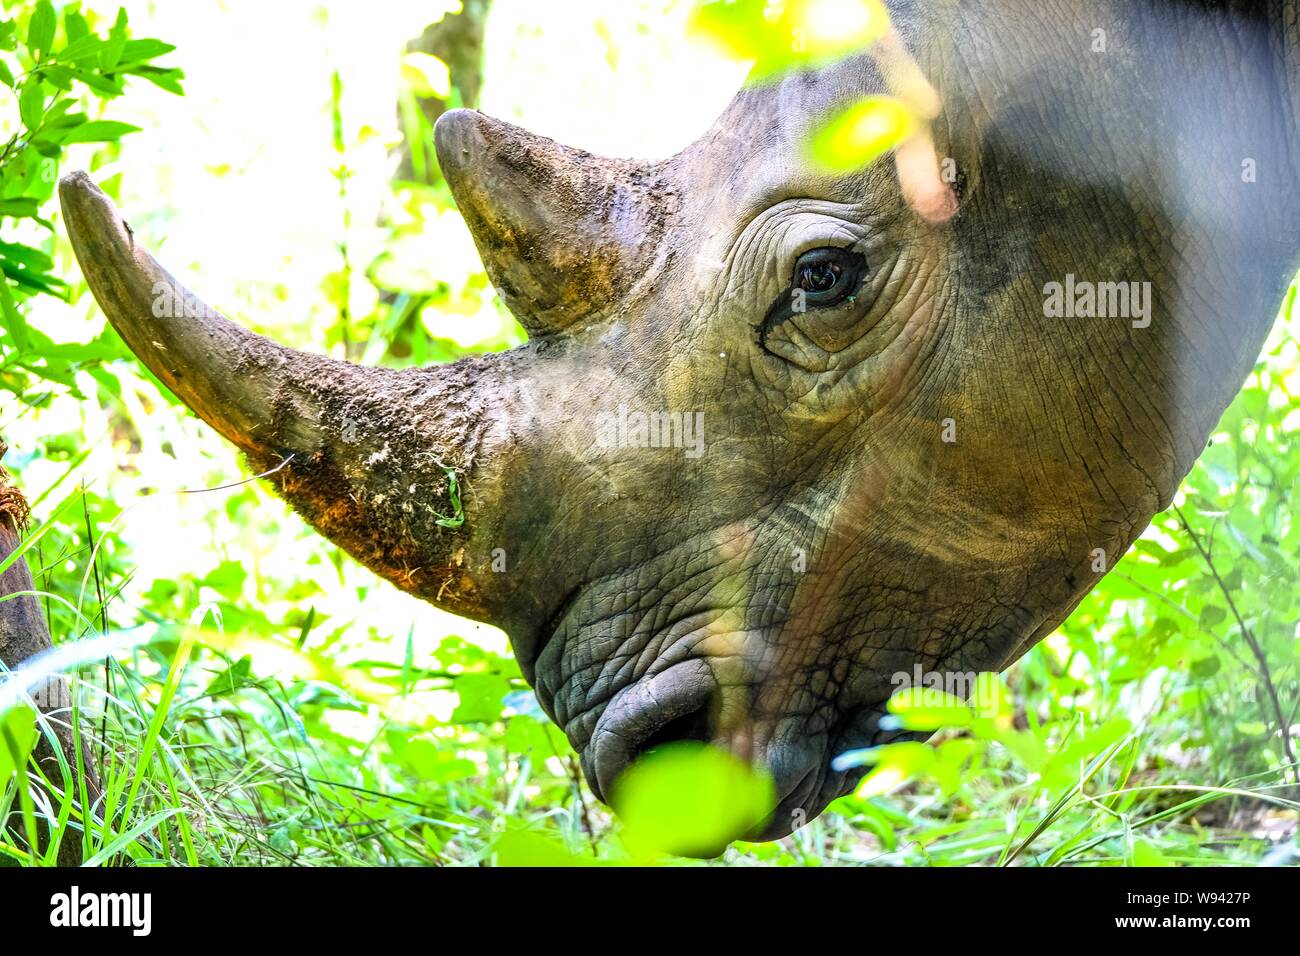 Gros plan de la tête d'un rhinocéros près des plantes et d'un arbre pas une journée ensoleillée Banque D'Images